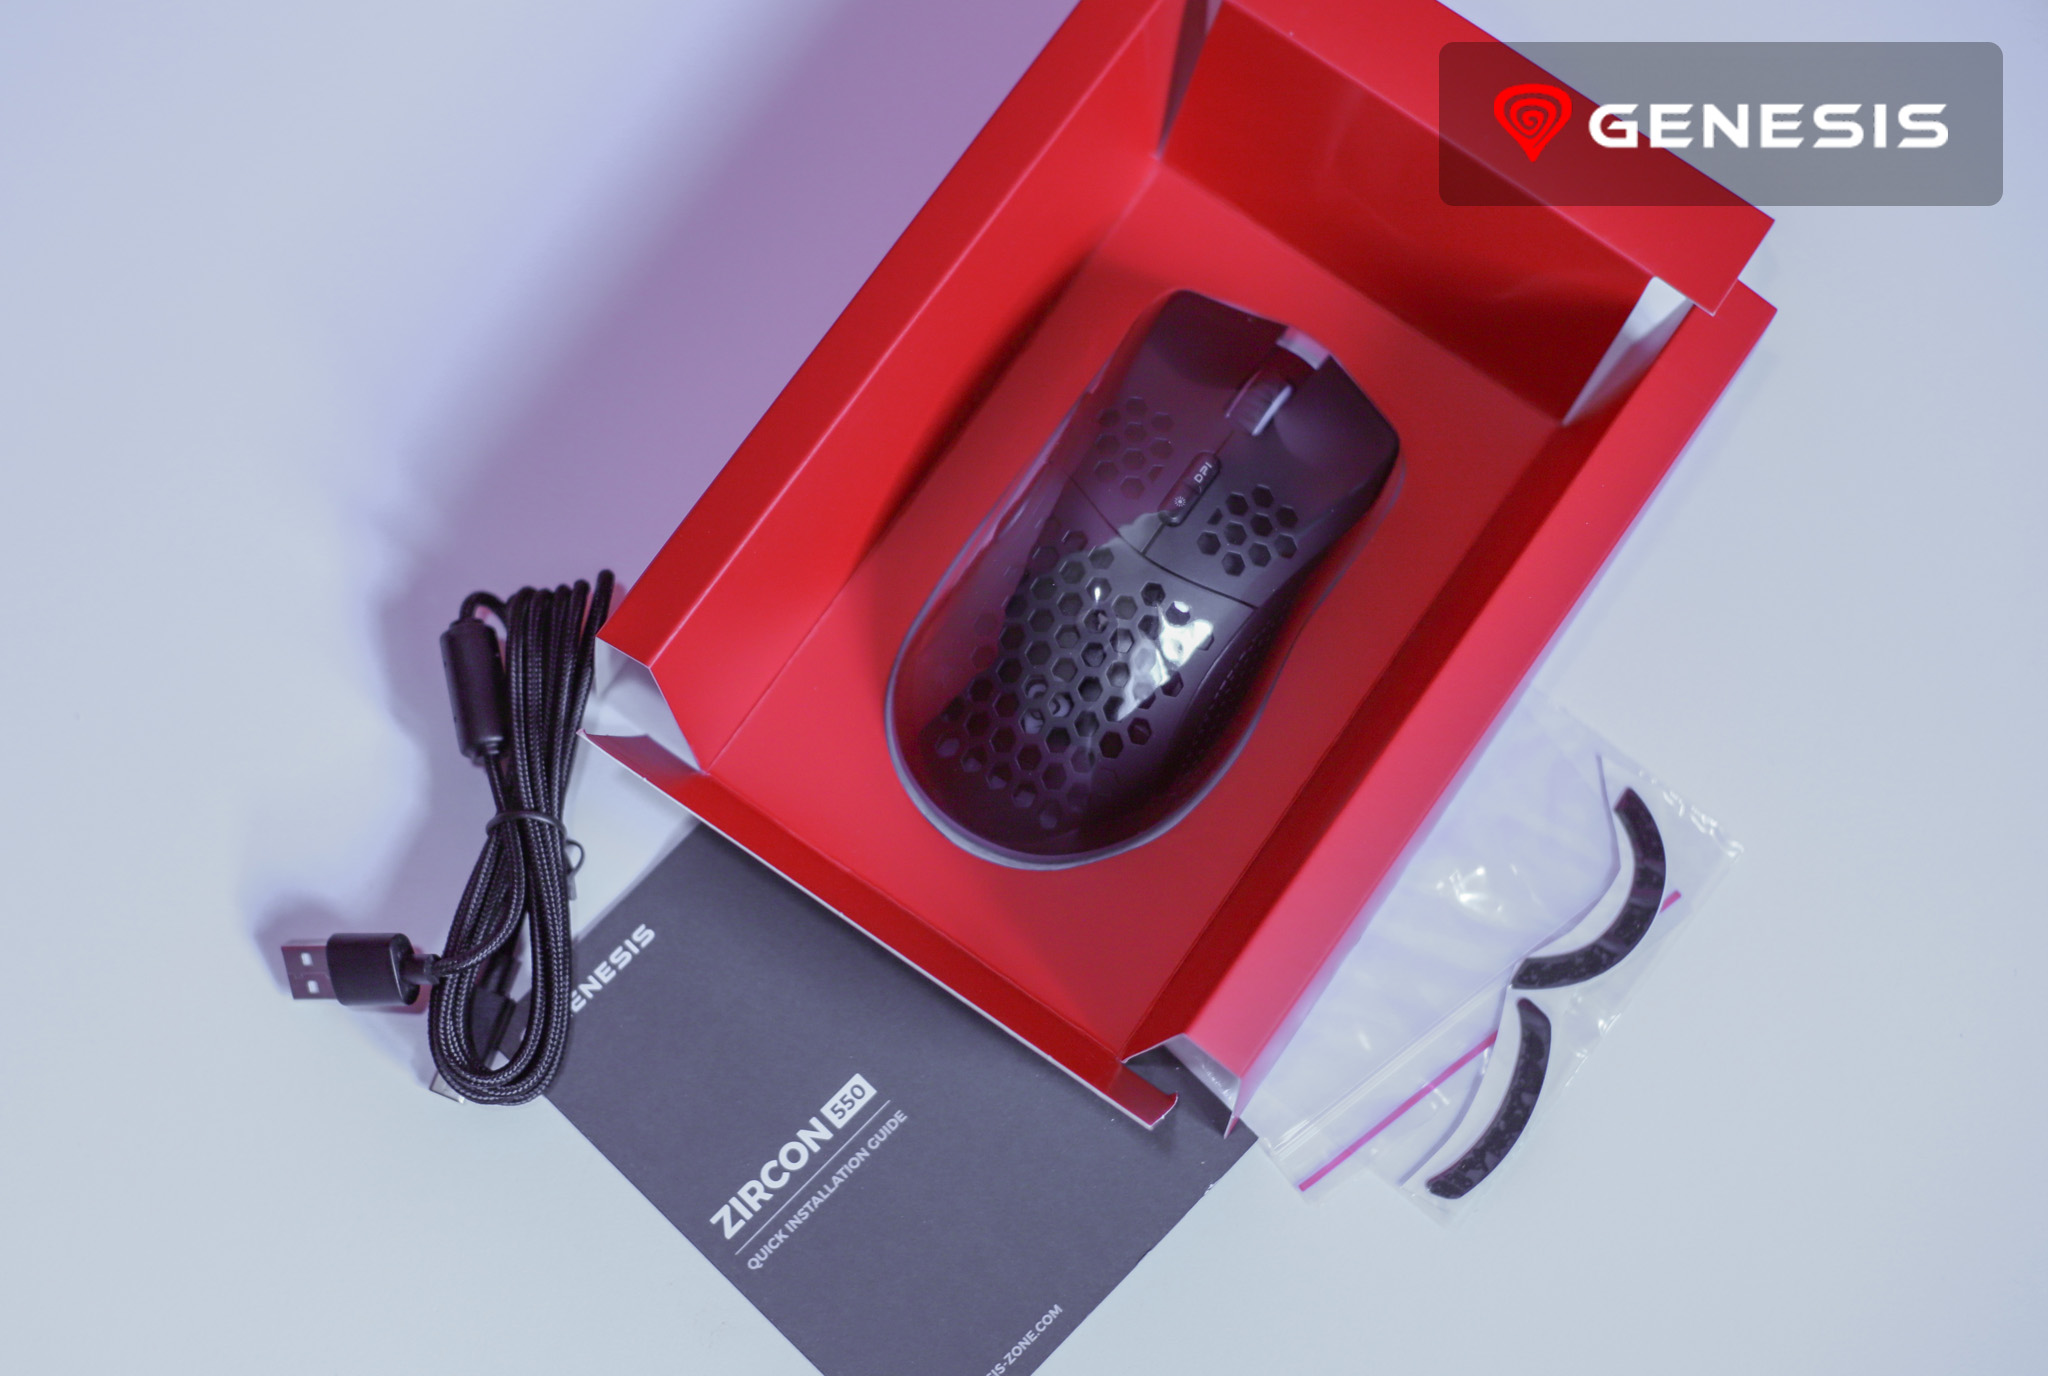 Genesis Zircon 550 bezprzewodowa myszka dla graczy zawartość opakowania